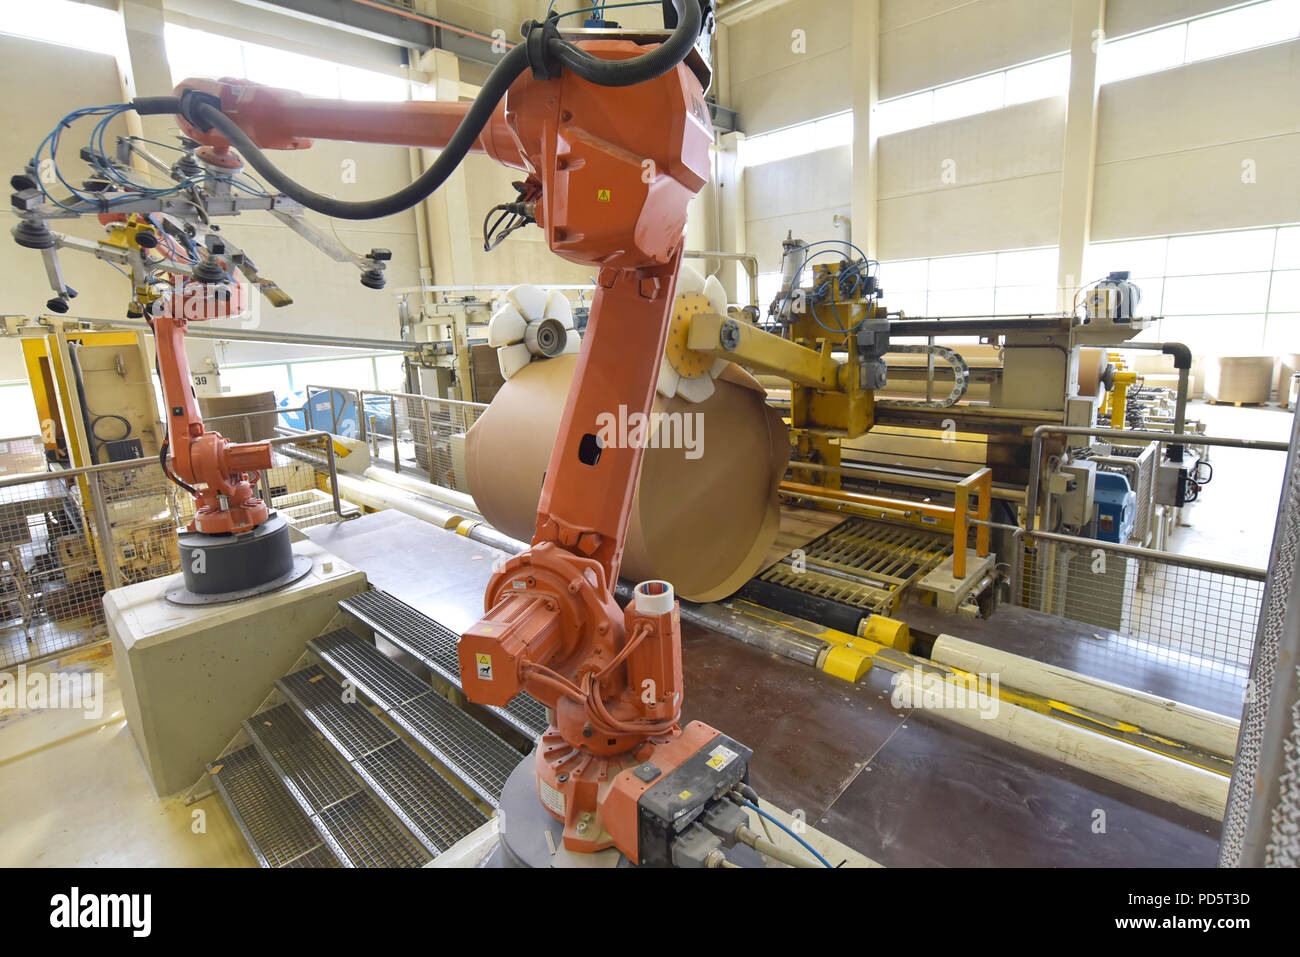 Industrielle Roboter in eine Papierfabrik - Automatisierung in einem modernen Werk - Recycling von Altpapier Stockfoto